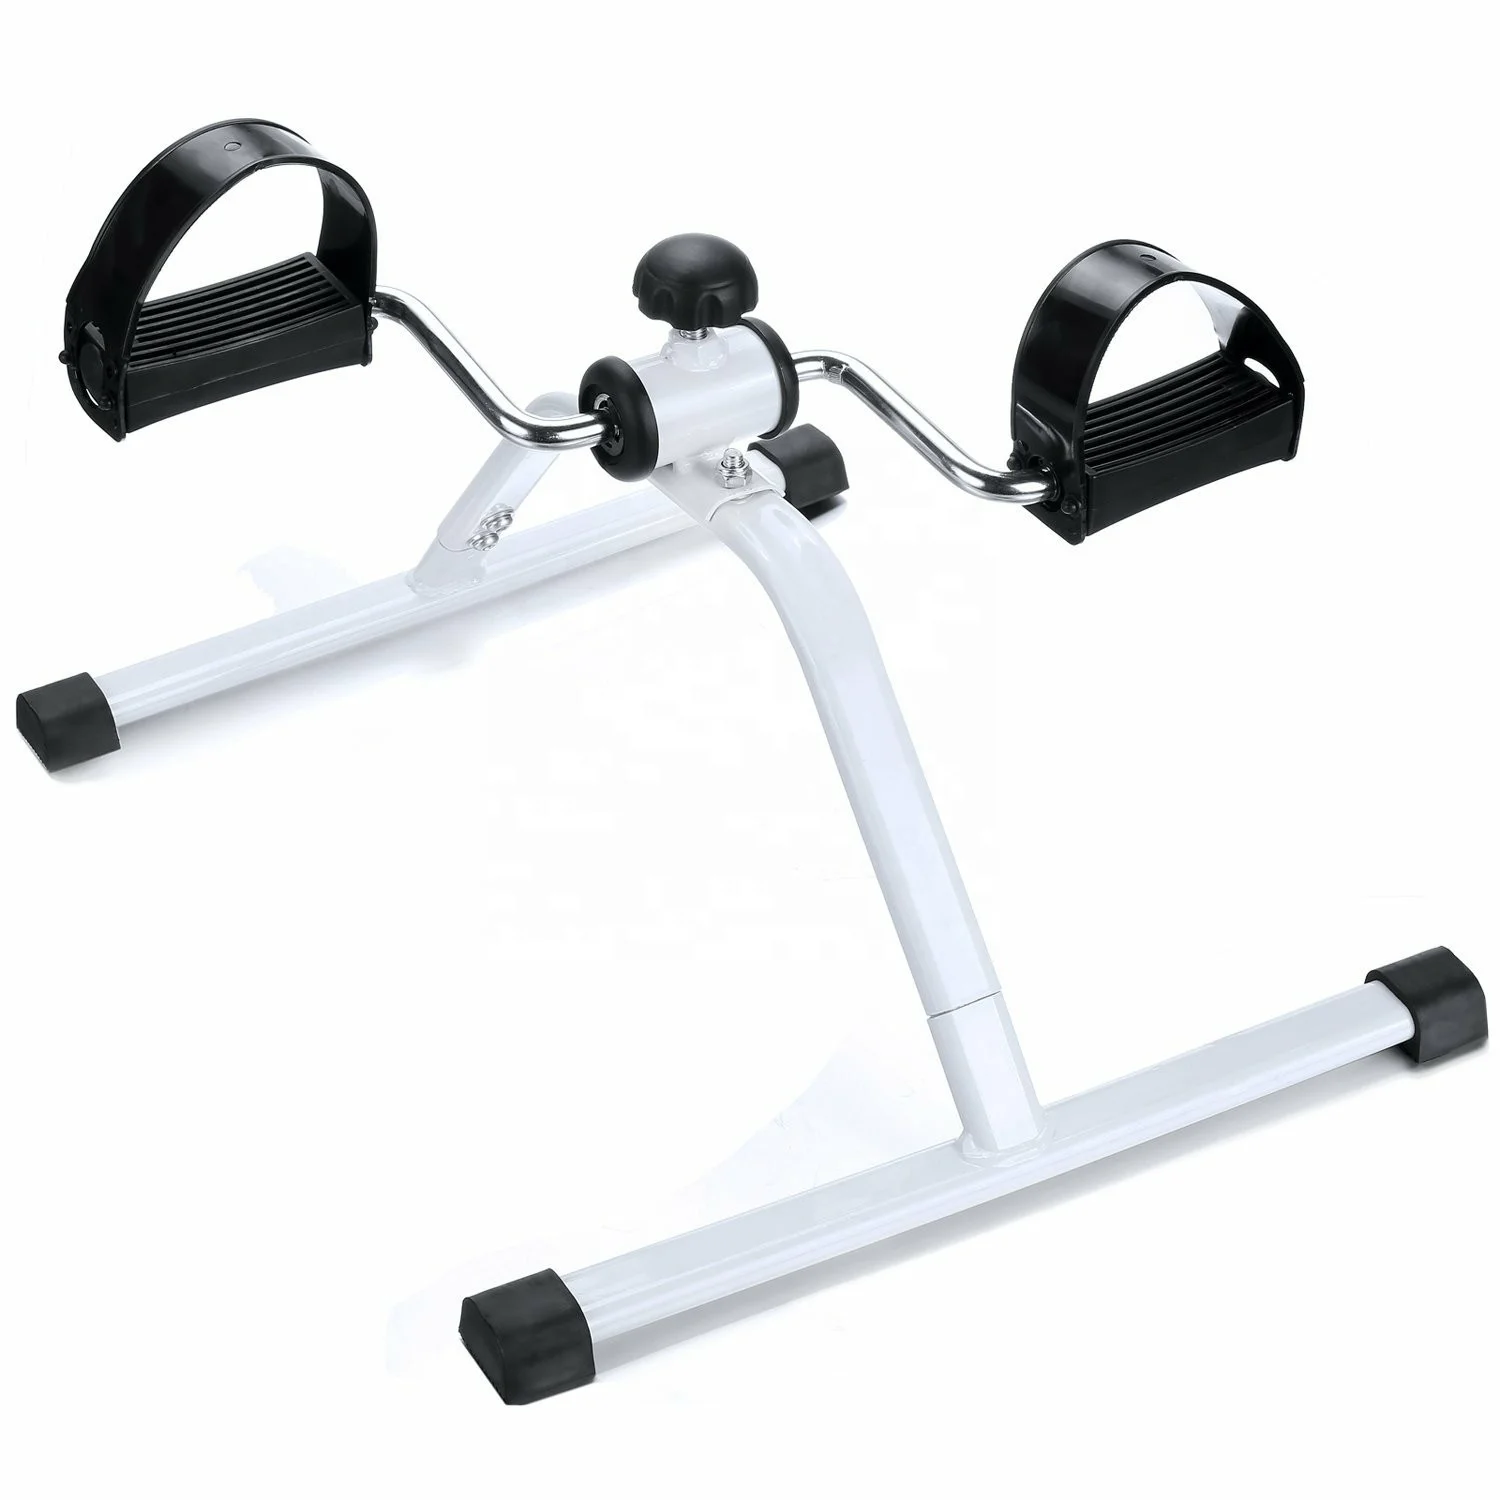 

2021 Hot sale mini pedal exerciser,under desk cycle bike,mini foot leg exerciser knee bike walker rehabilitation